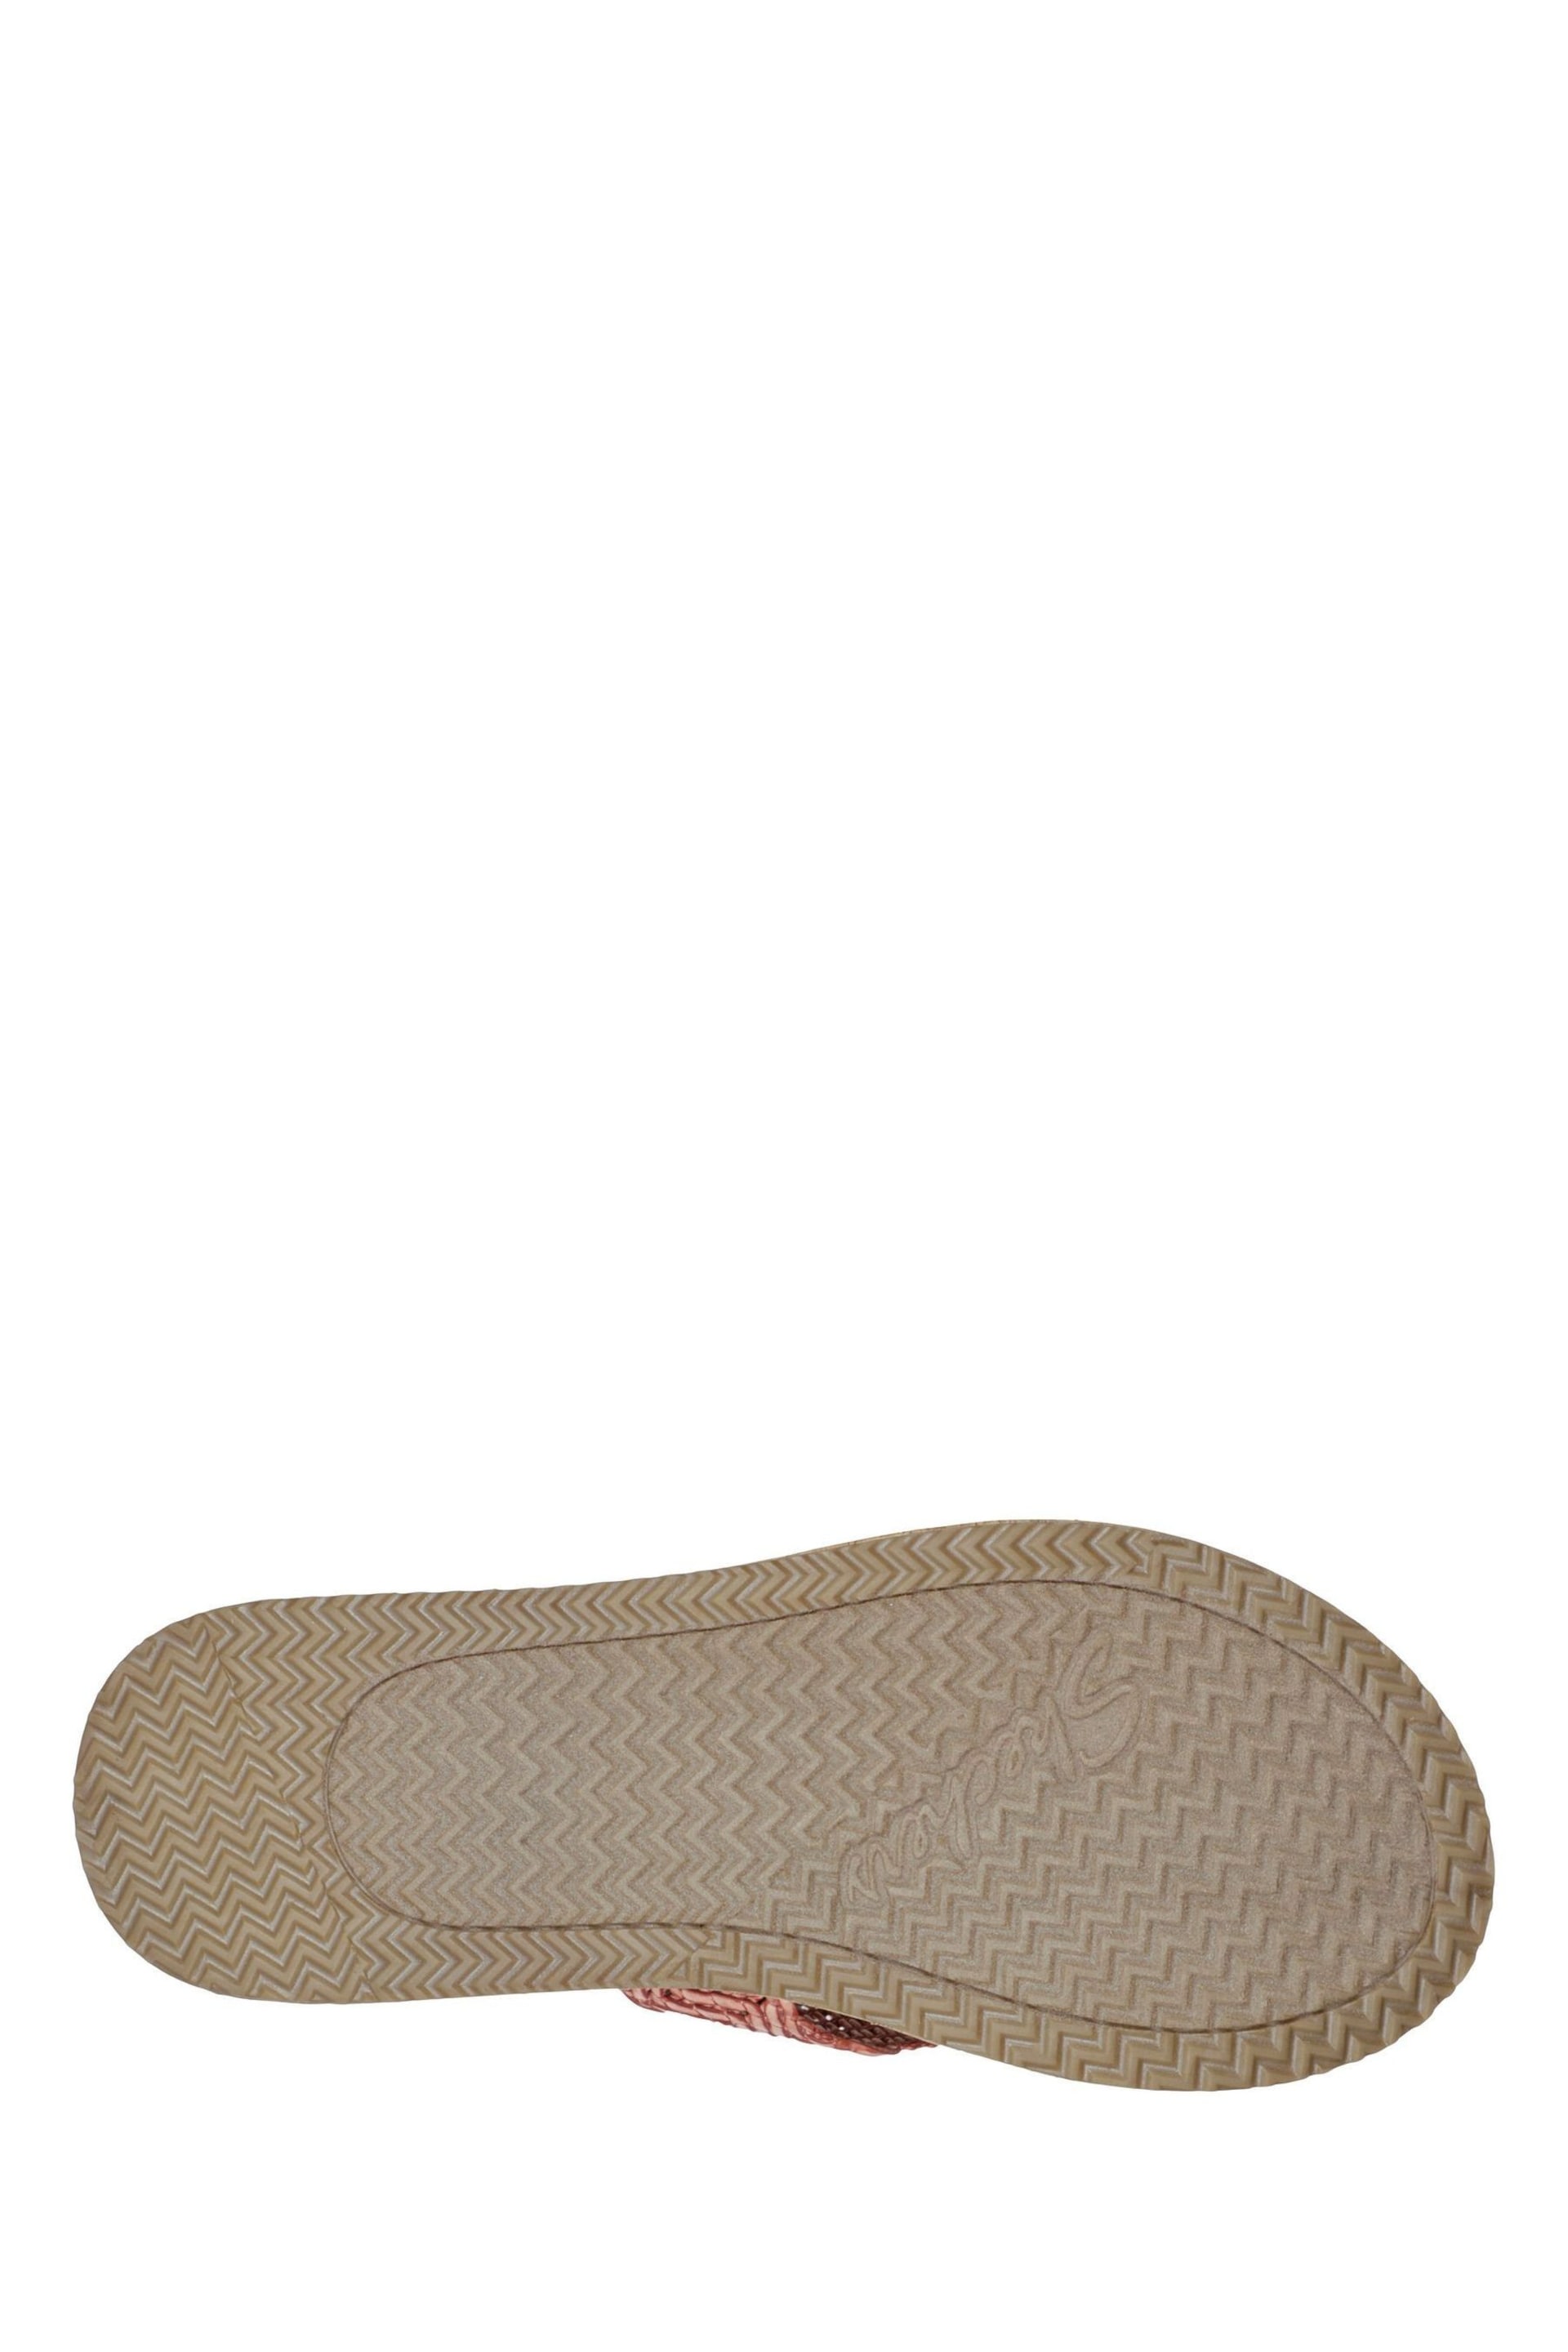 Skechers Pink Sandcomber Sandals - Image 5 of 5